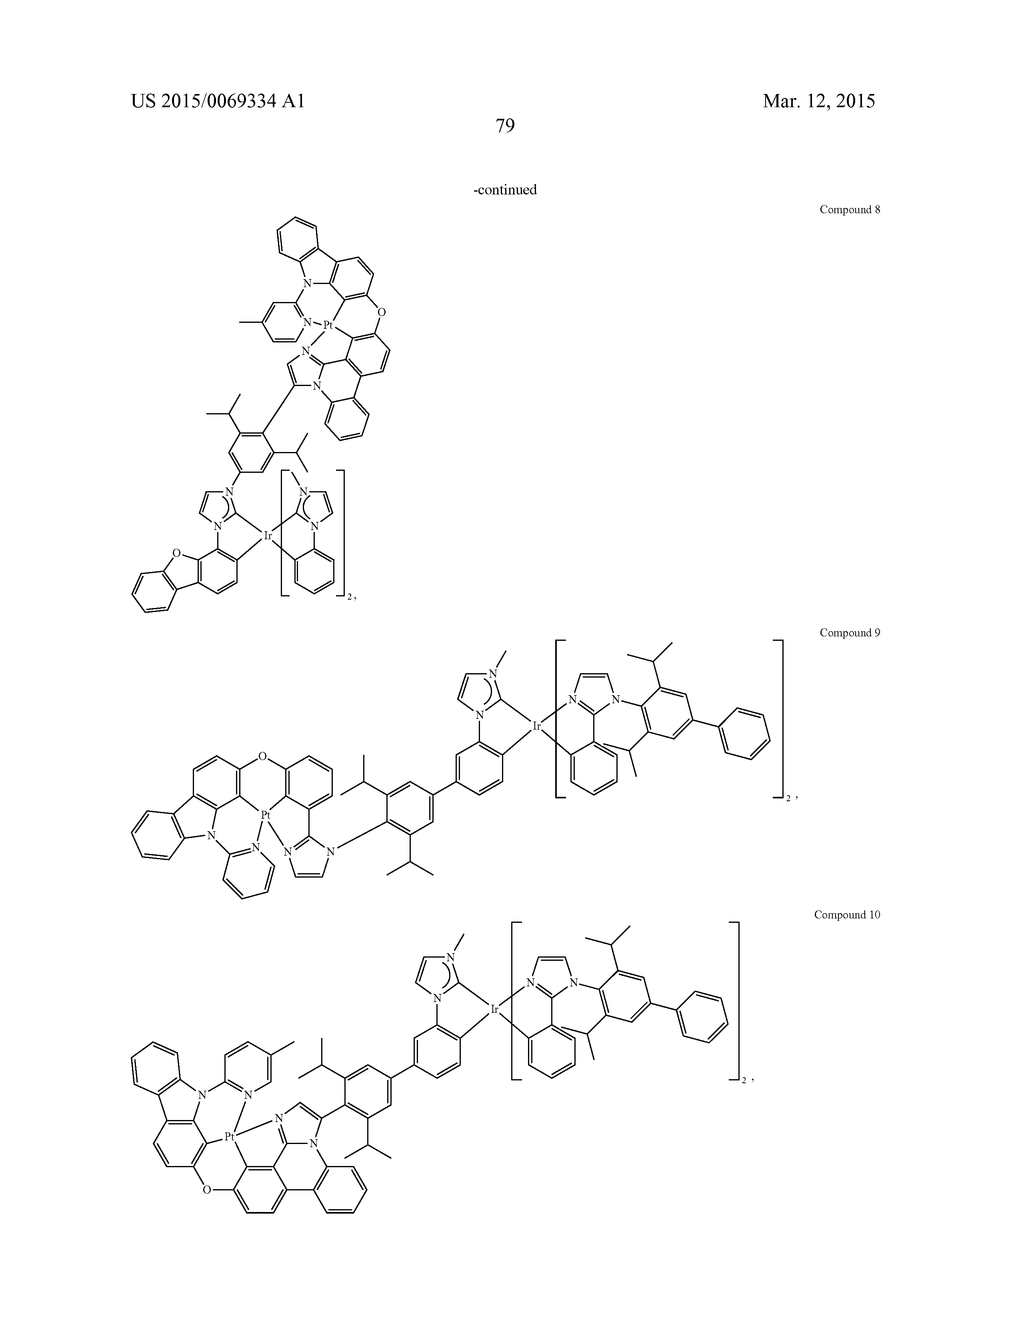 IRIDIUM/PLATINUM METAL COMPLEX - diagram, schematic, and image 85